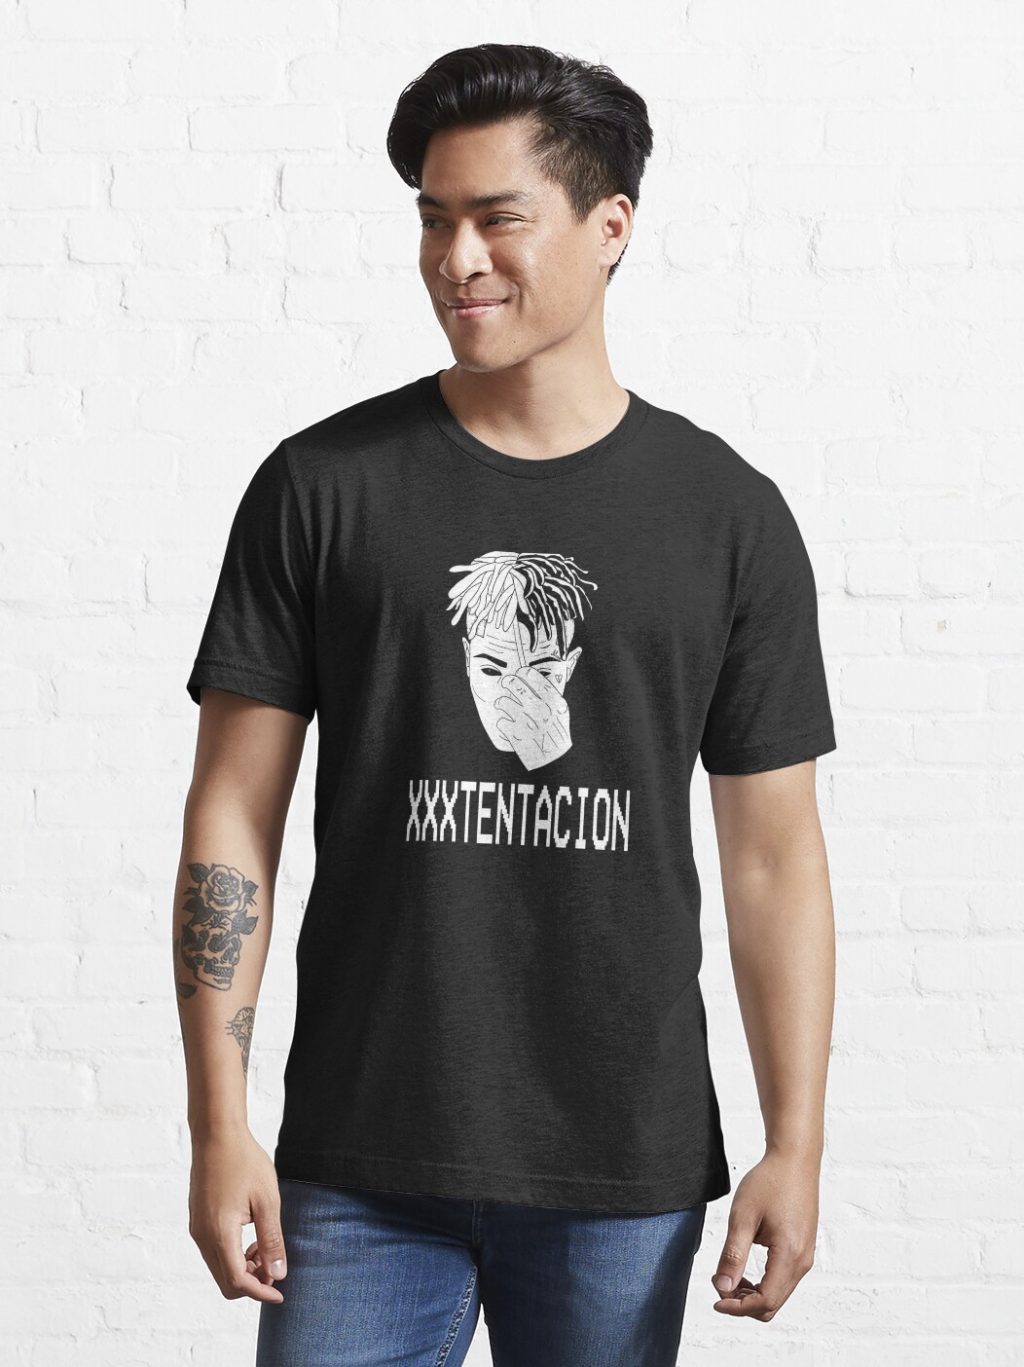 XXXTENTACTION T-shirt Official Haikyuu Merch